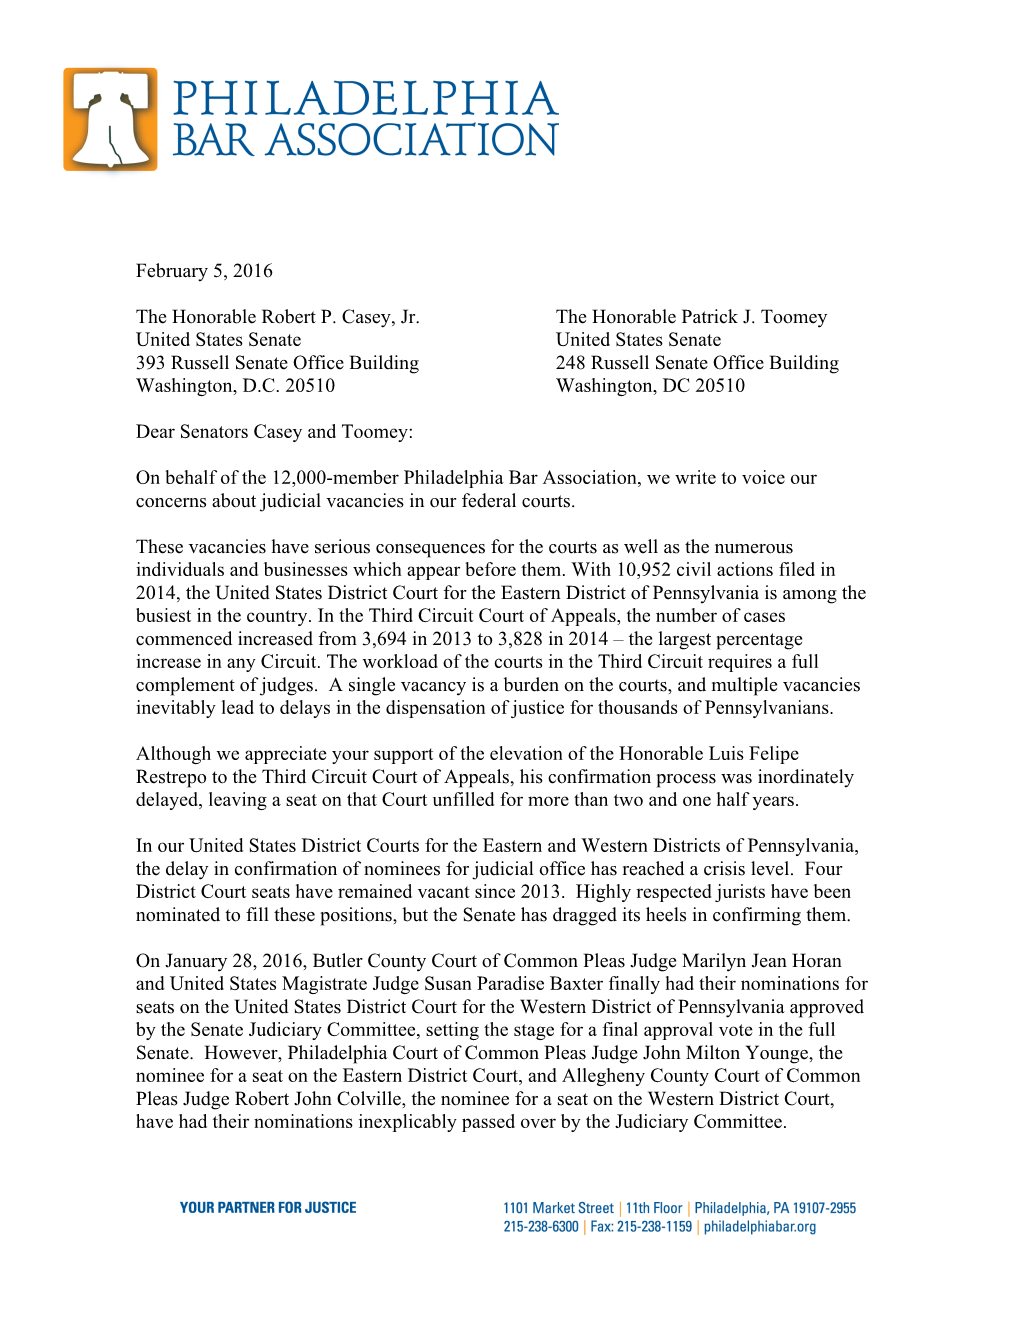 Letter to Senators Casey, Toomey